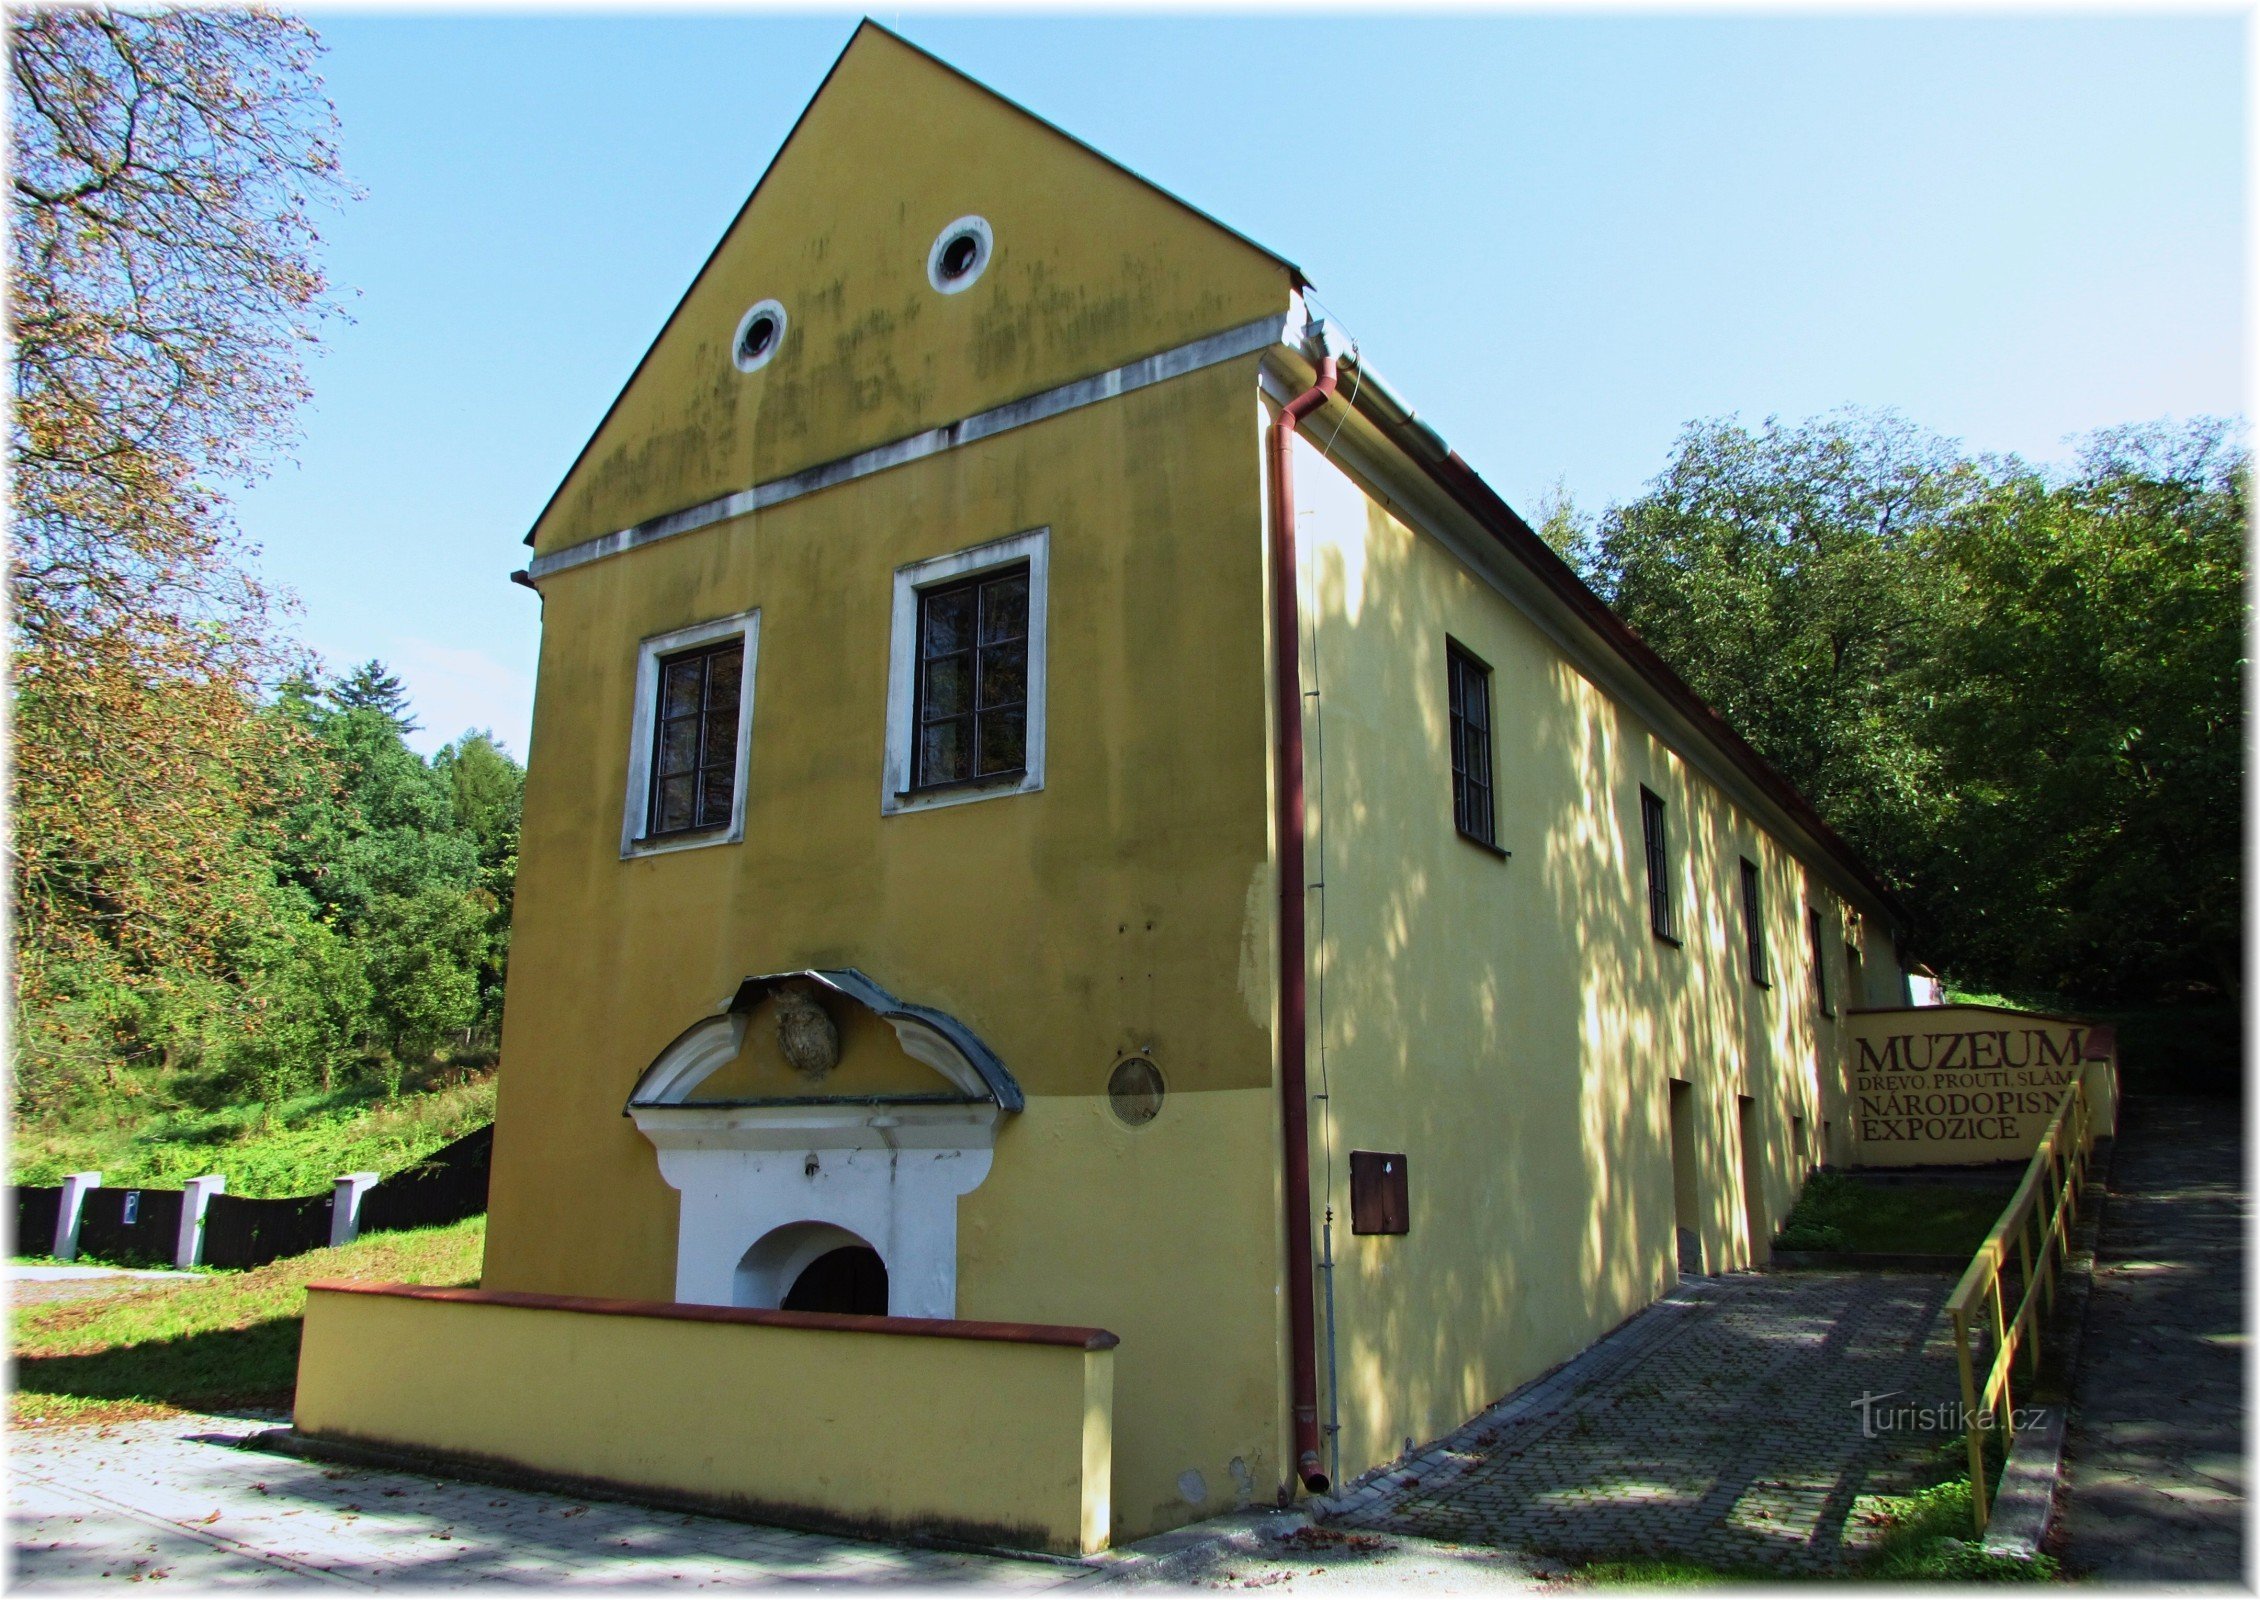 Гаенский музейный объект в замке в Маленовицах